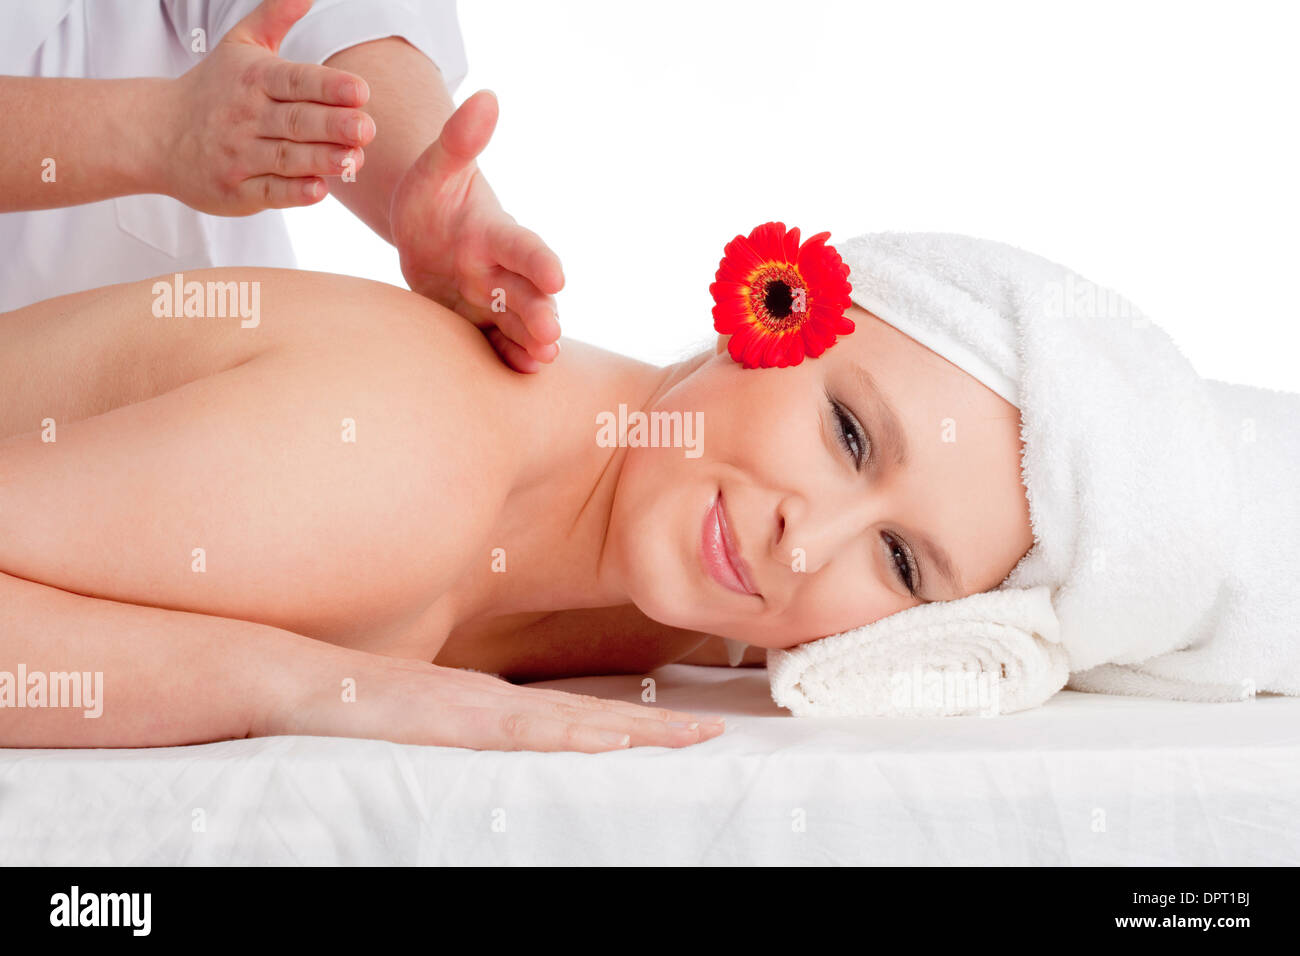 Beautiful Woman Enjoying Back Massage at Beauty Spa Stock Photo